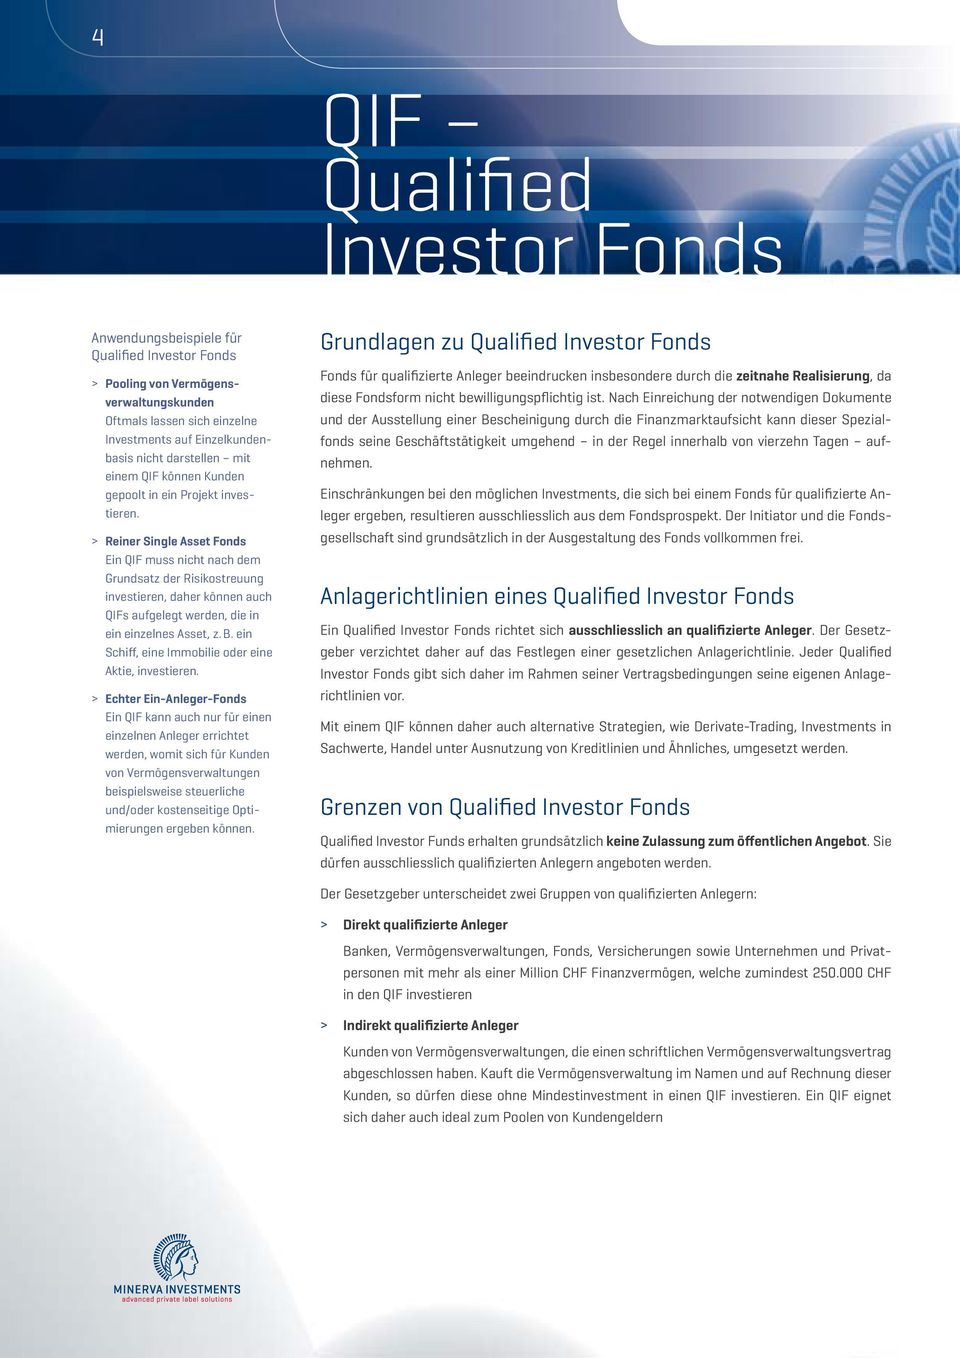 > Reiner Single Asset Fonds Ein QIF muss nicht nach dem Grundsatz der Risikostreuung investieren, daher können auch QIFs aufgelegt werden, die in ein einzelnes Asset, z. B.